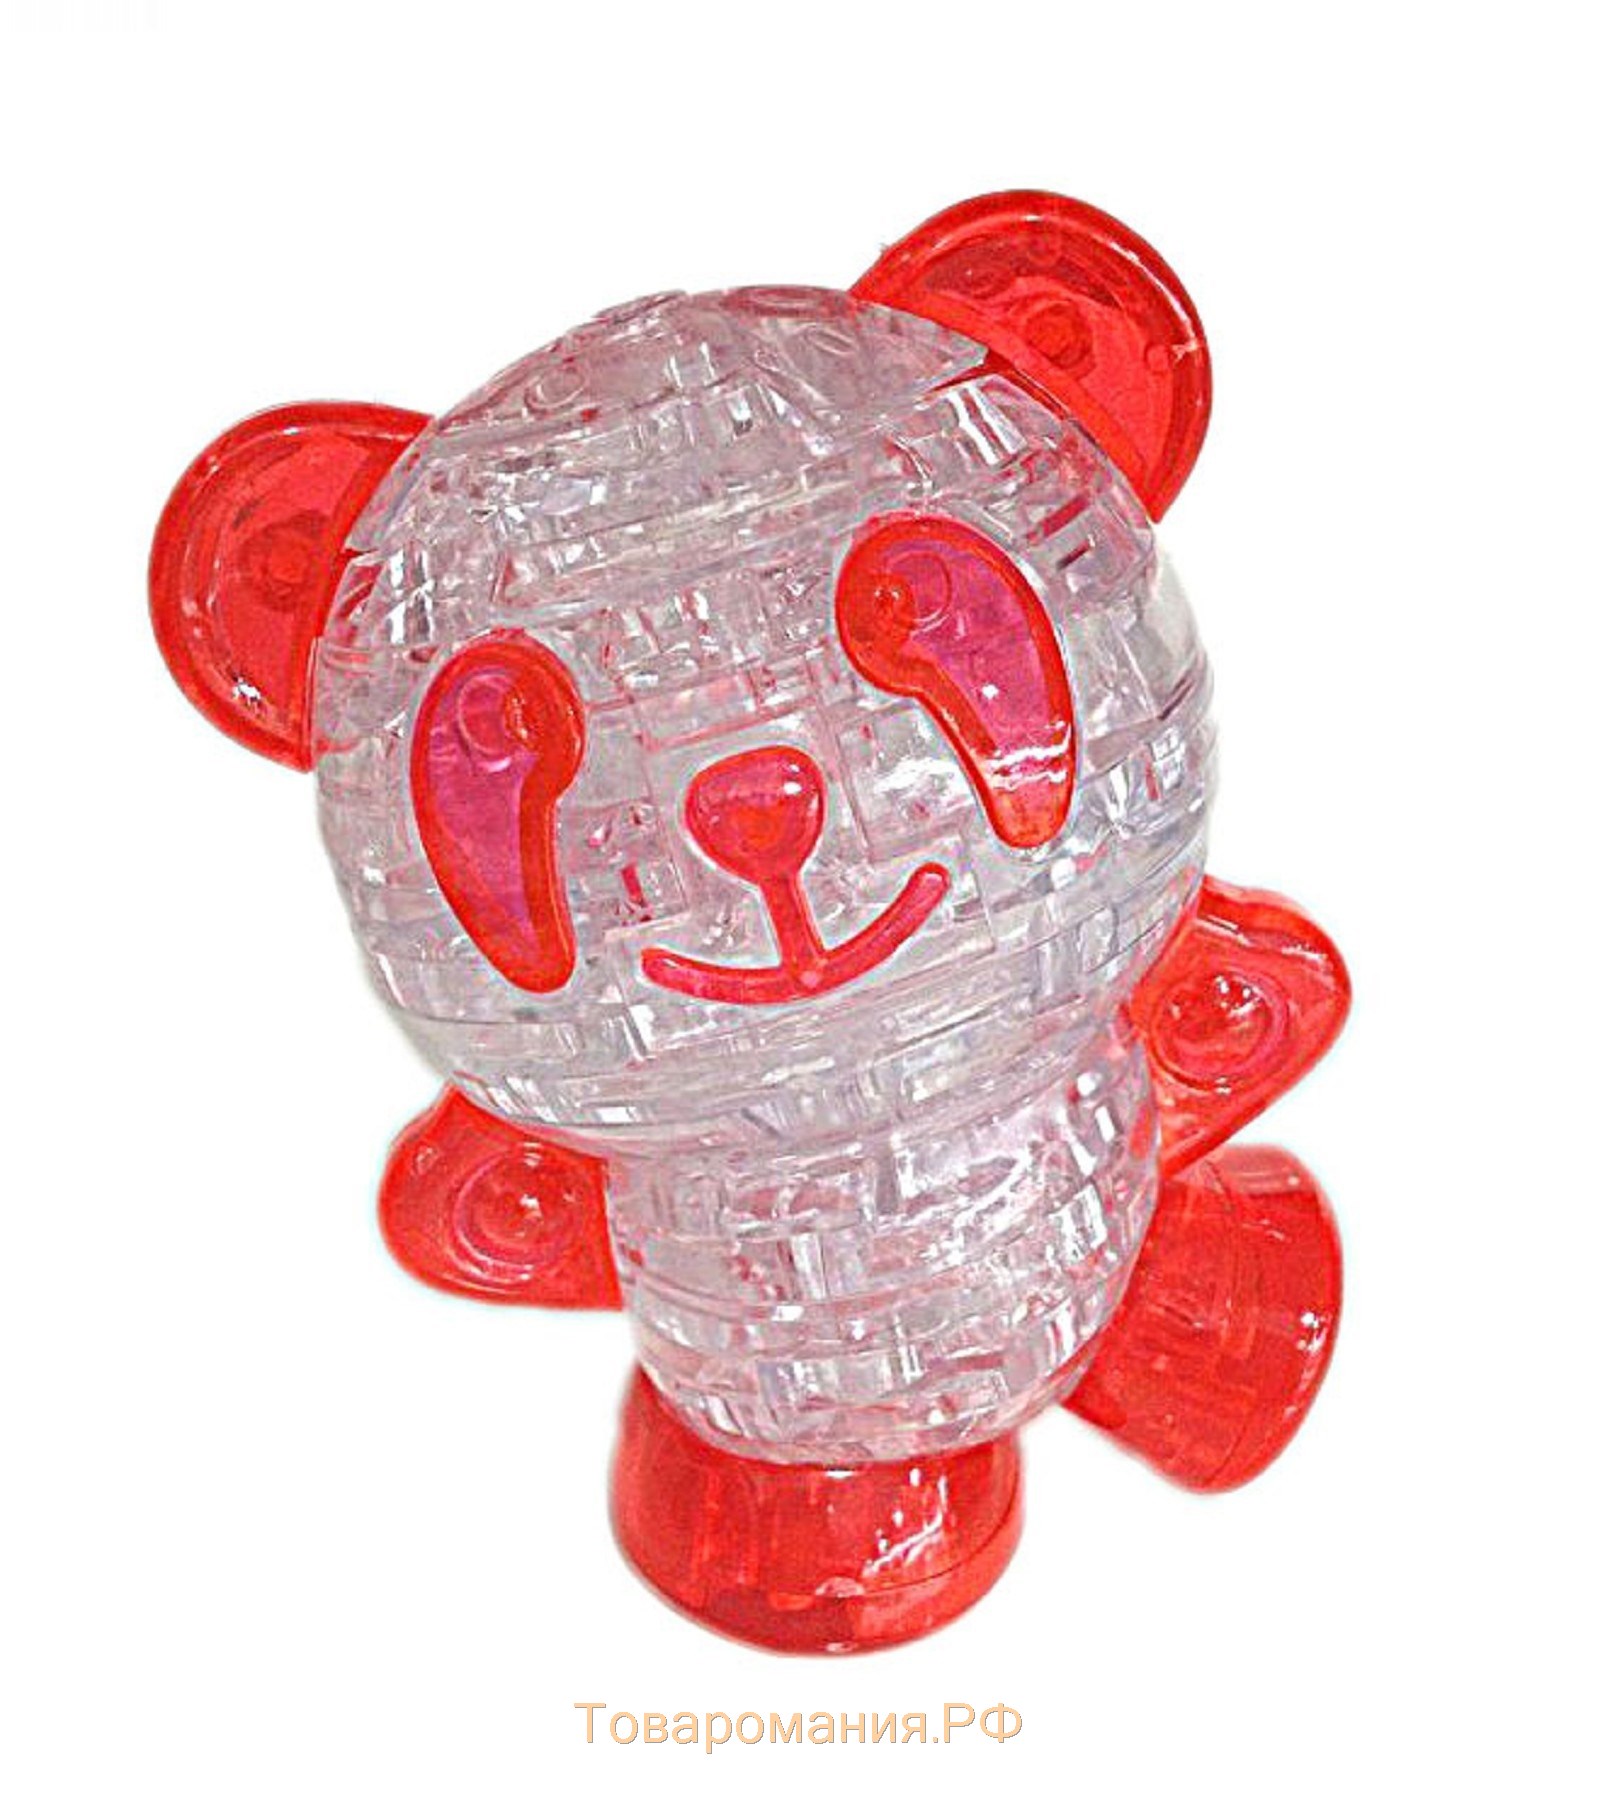 3D пазл «Панда», кристаллический, 53 детали, световой эффект, цвета МИКС